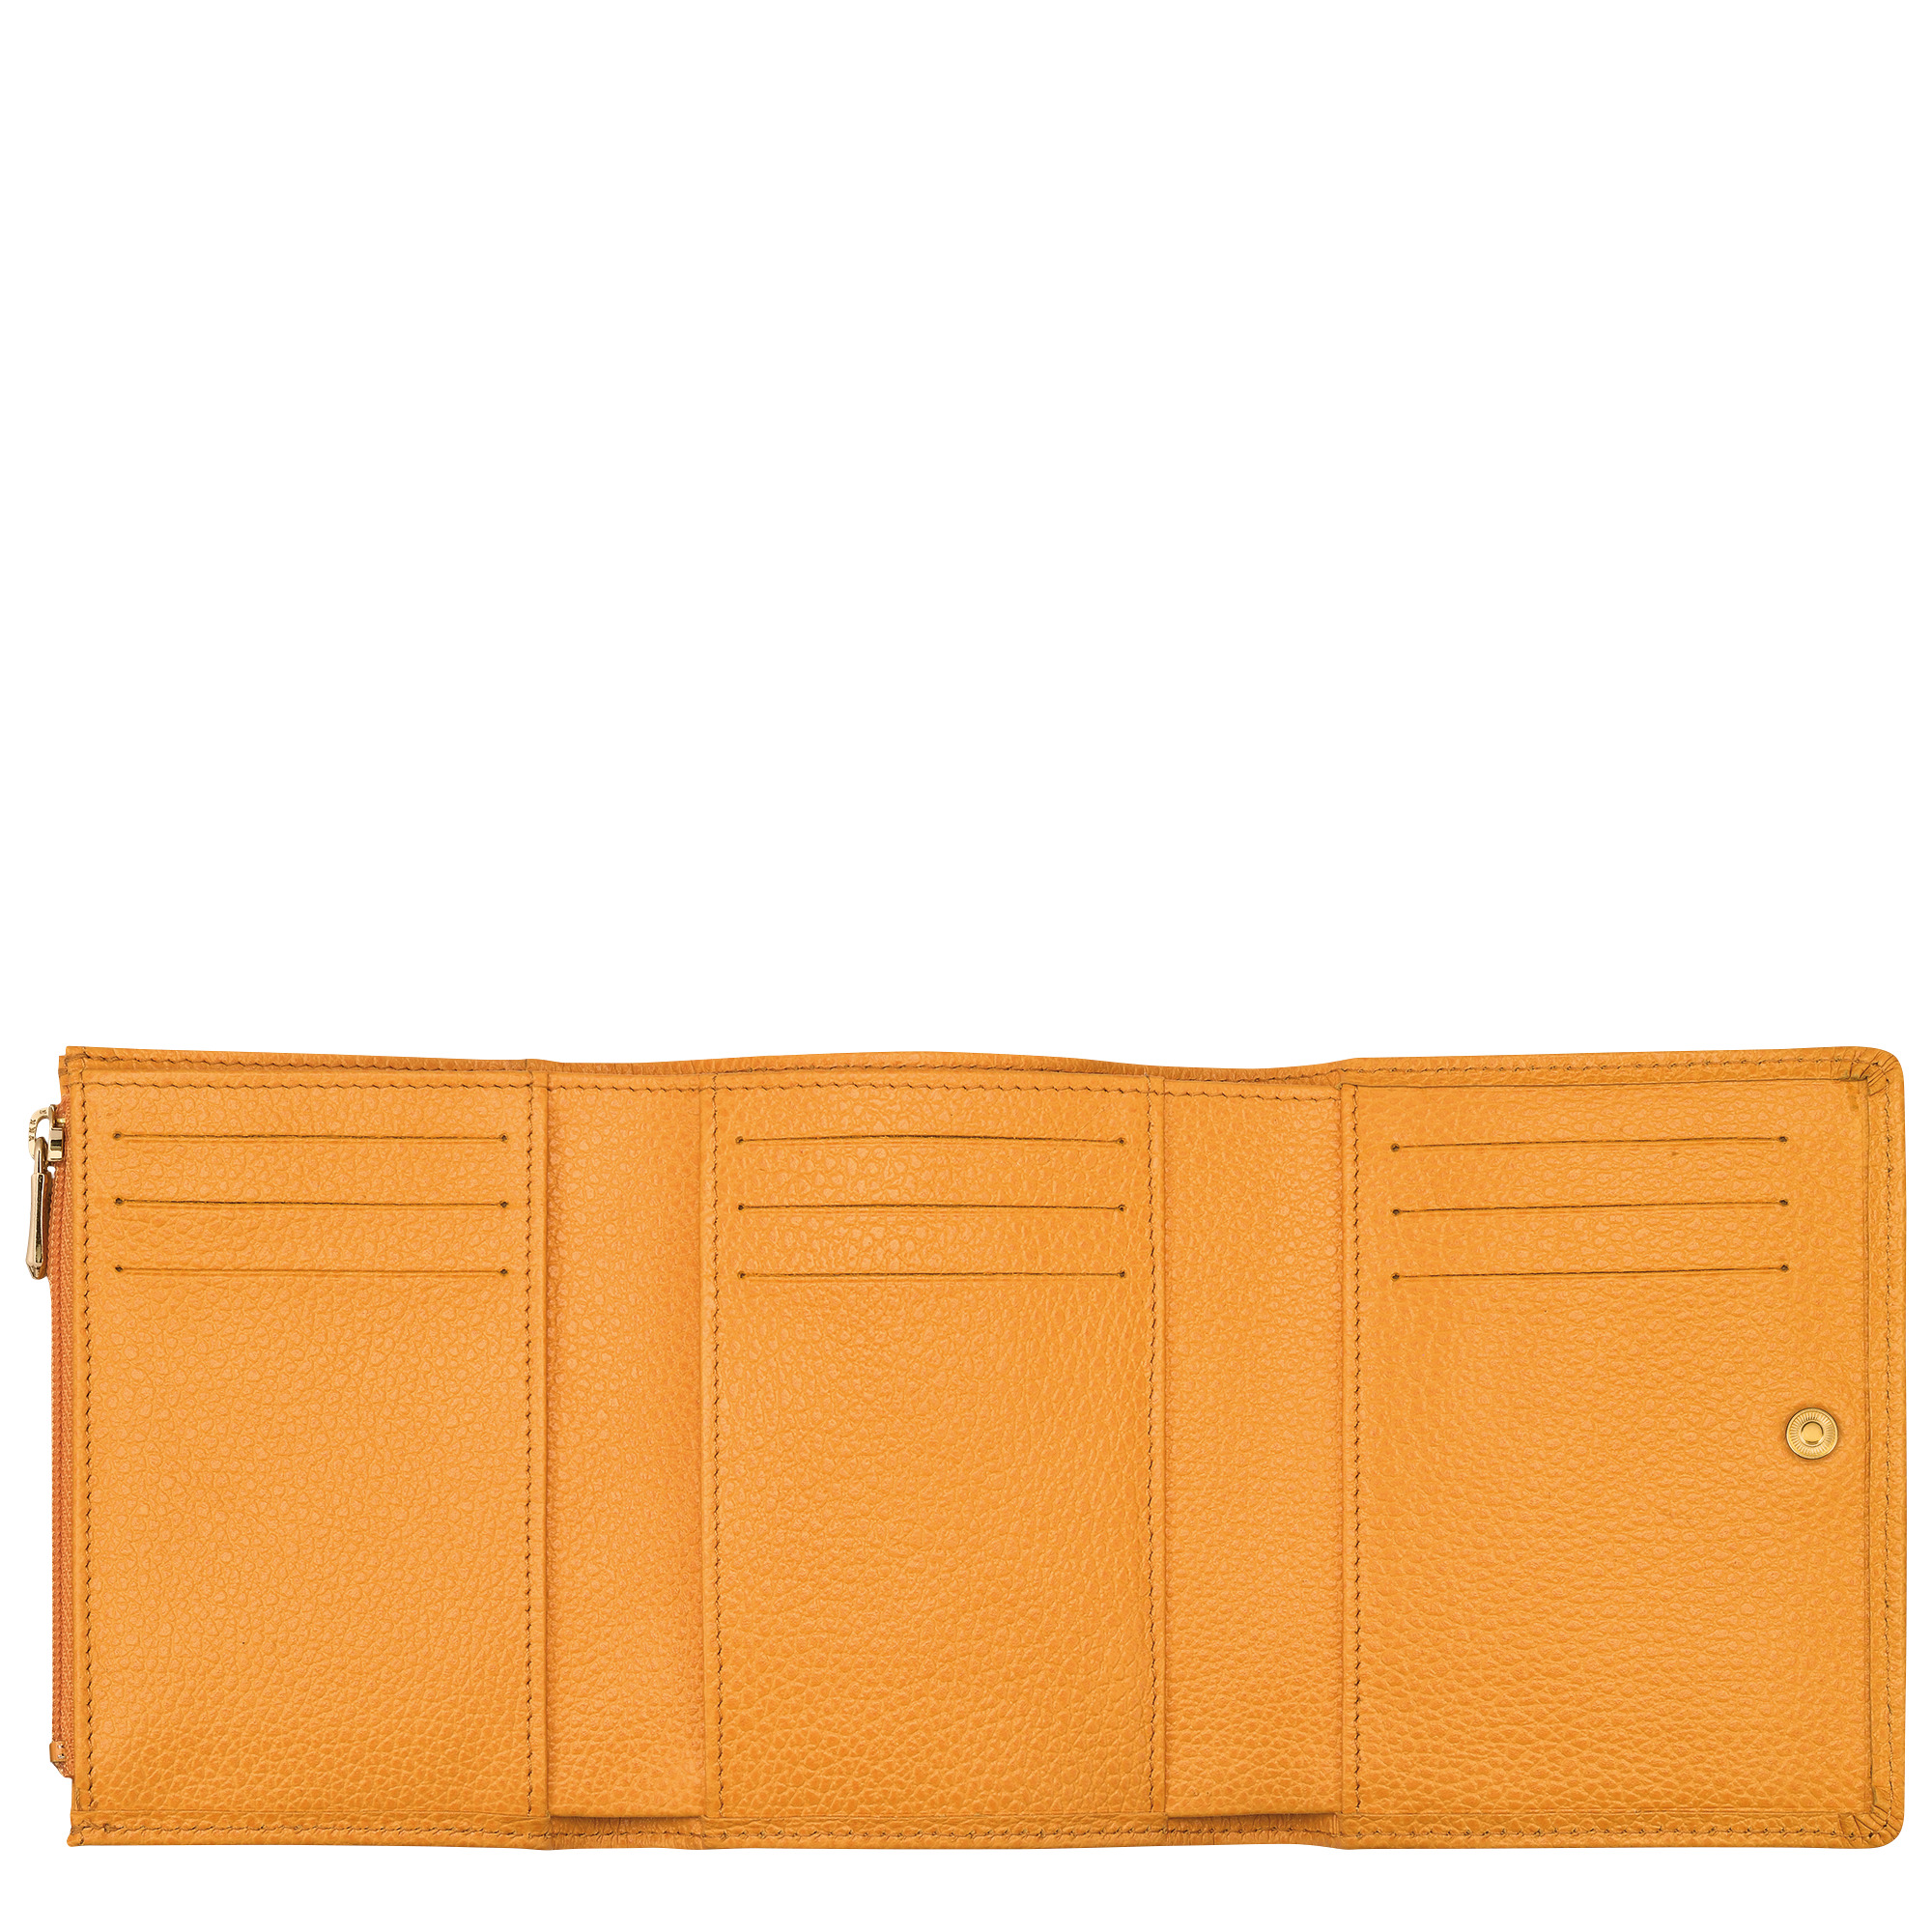 Le Foulonné Wallet Apricot - Leather - 2